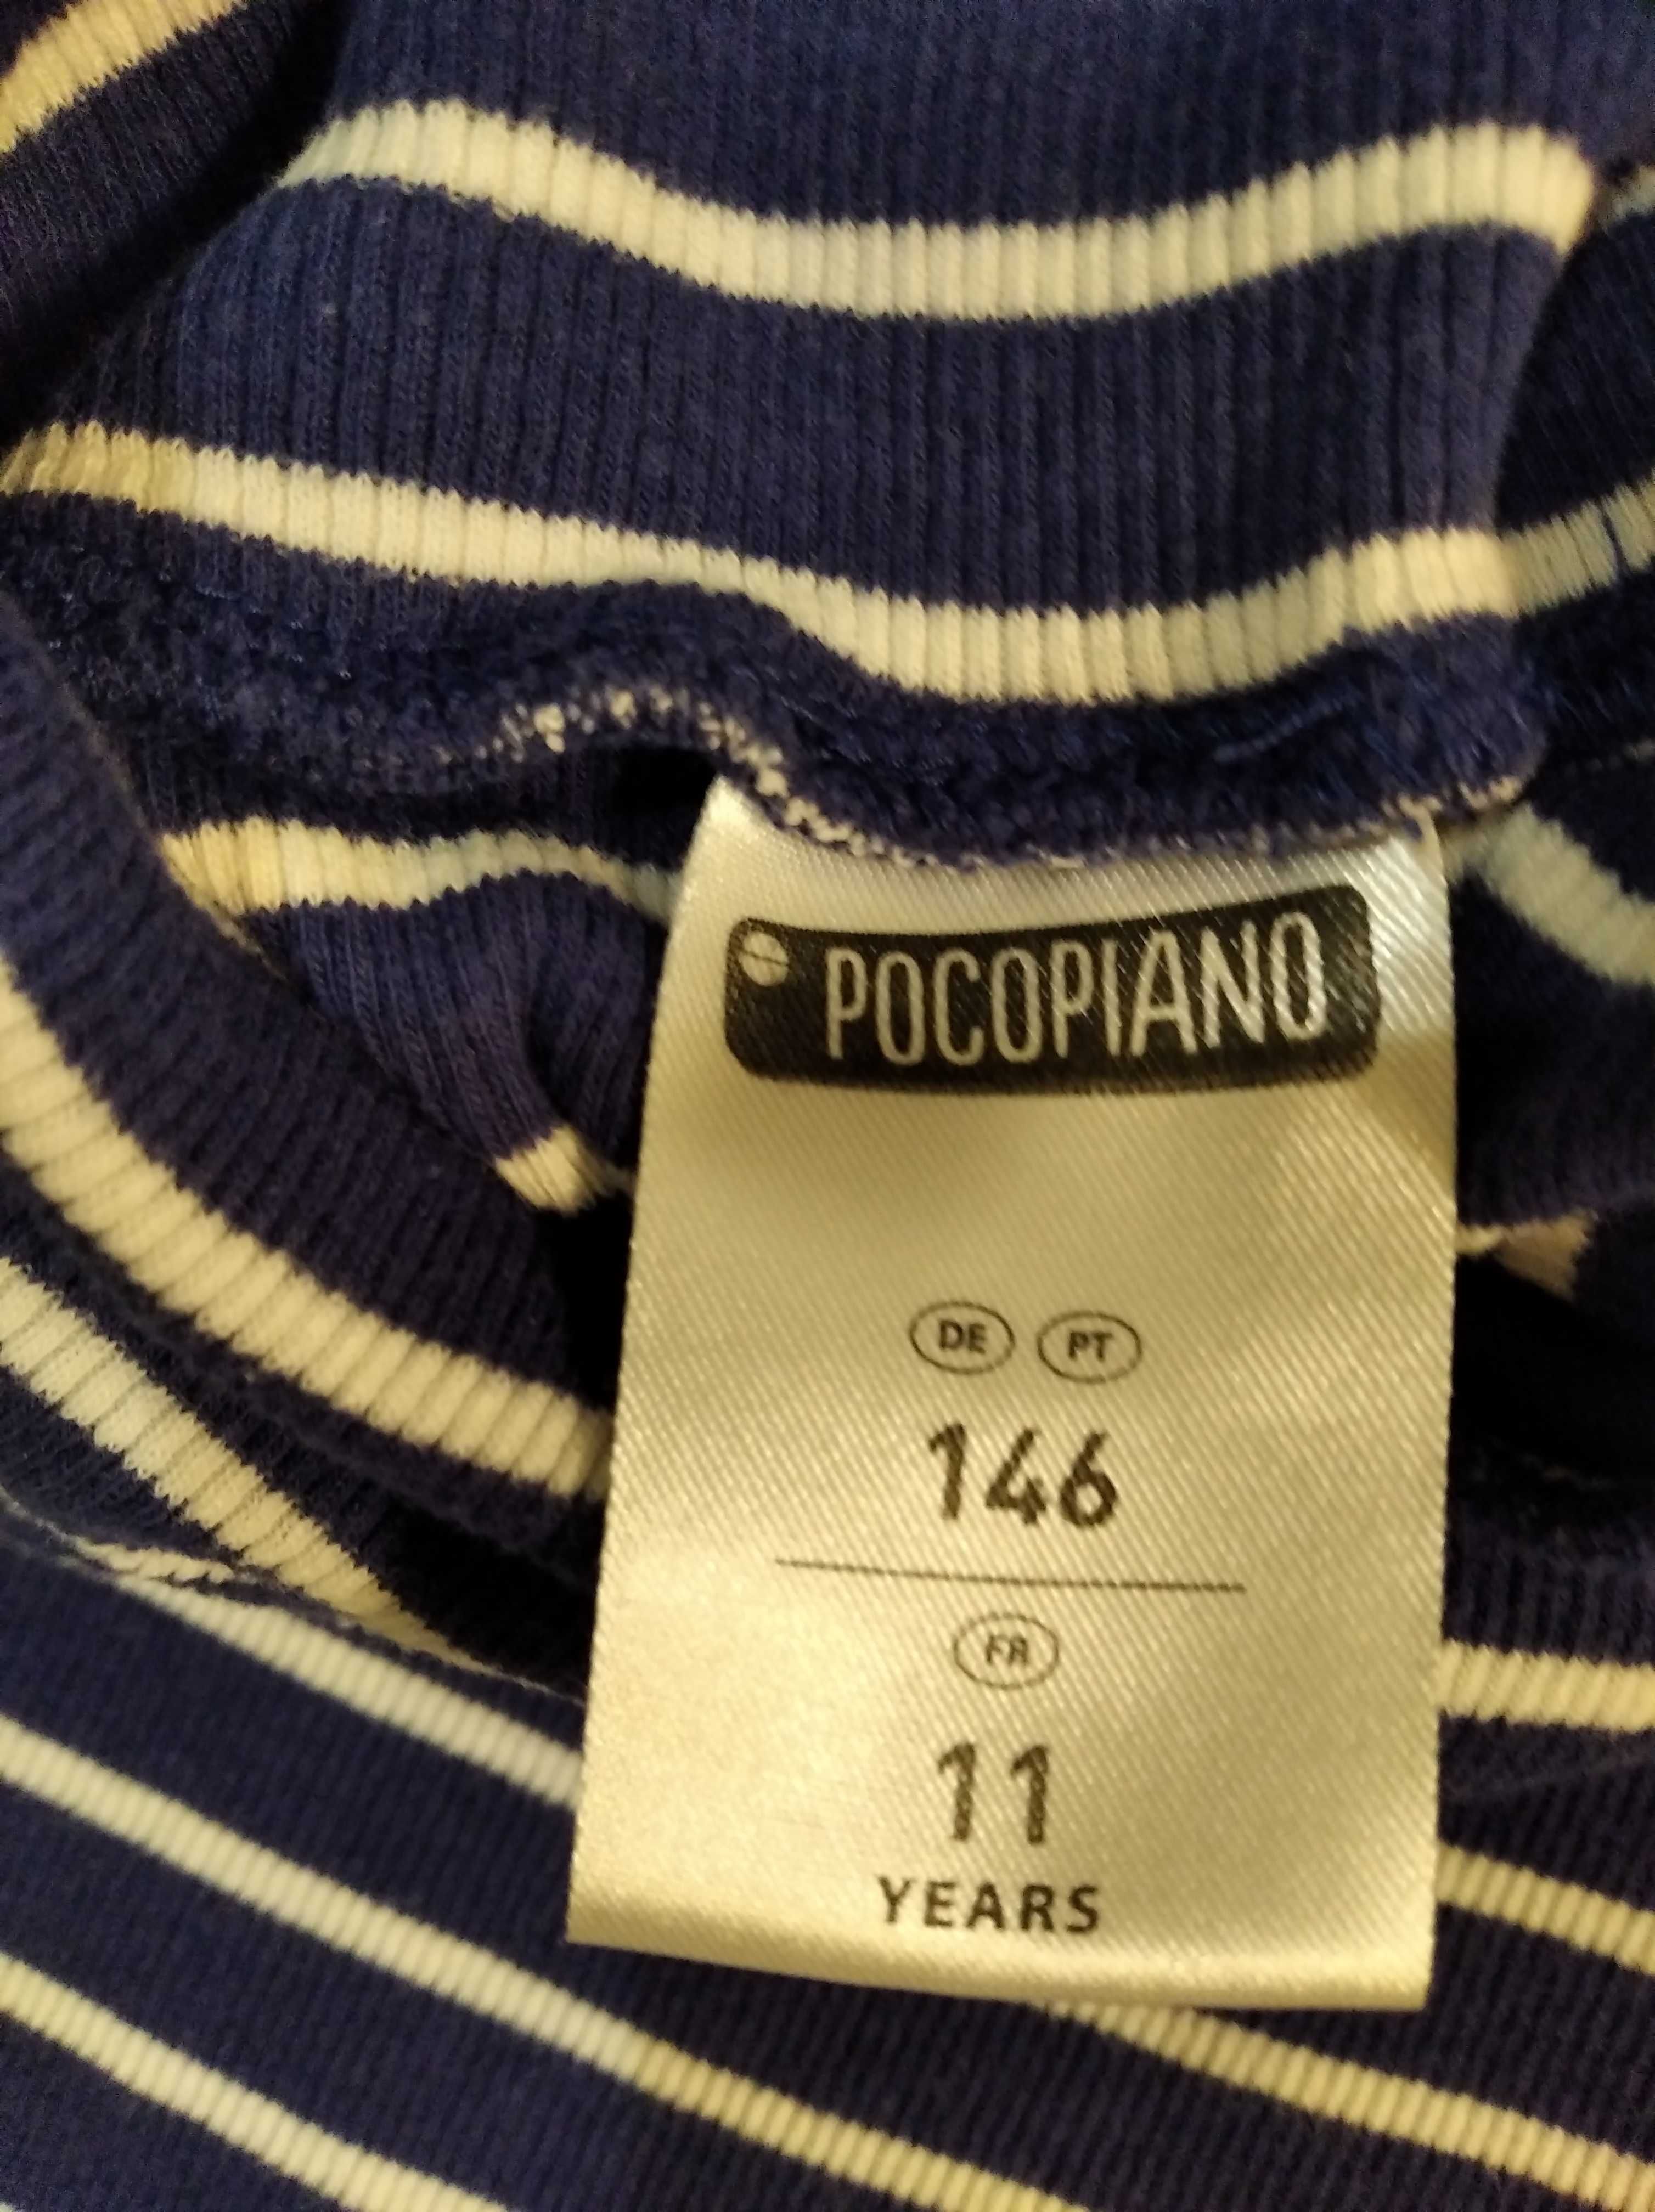 Гольф-свитер фирмы Pocopiano на 11 лет, 146 см.